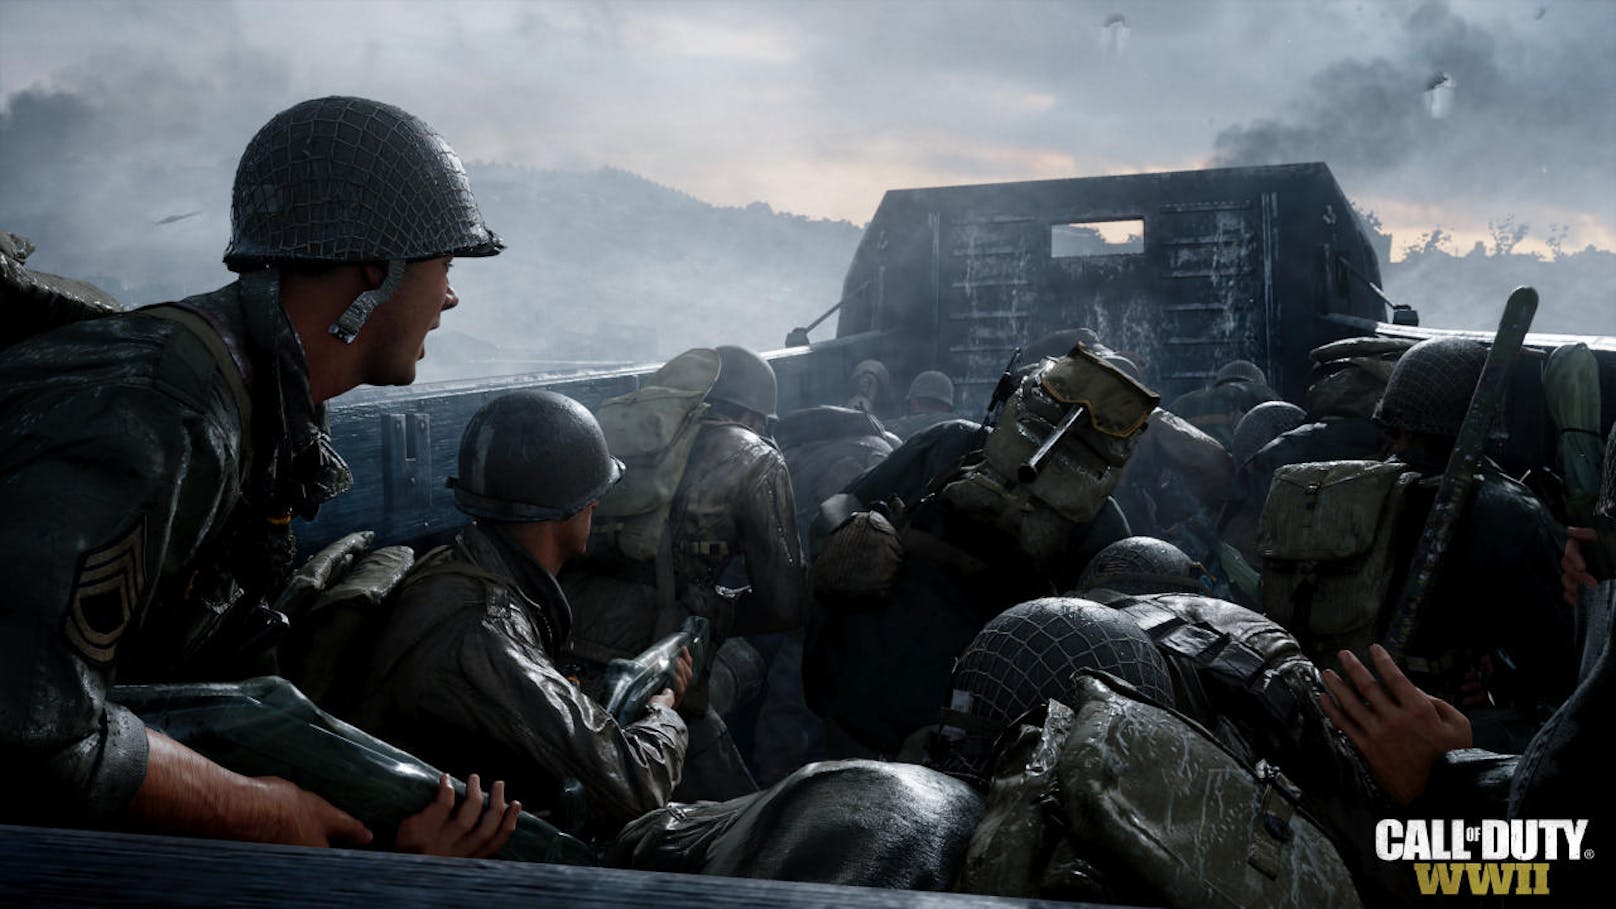 Spieler mit Xbox One und PC können sich nun auch dem Widerstand anschließen, denn Call of Duty: WWII - The Resistance ist erhältlich. Das DLC-Pack "The Resistance" bietet drei neue Multiplayer-Maps und eine ganz neue Mission für den Kriegsmodus. Die Inhalte drehen sich um den Geist der zivilen Kämpfer, die während des Zweiten Weltkriegs für die Freiheit kämpften. Das DLC-Pack beinhaltet außerdem The Darkest Shore, das angsteinflößende neue Kapitel der Nazi-Zombies-Saga.